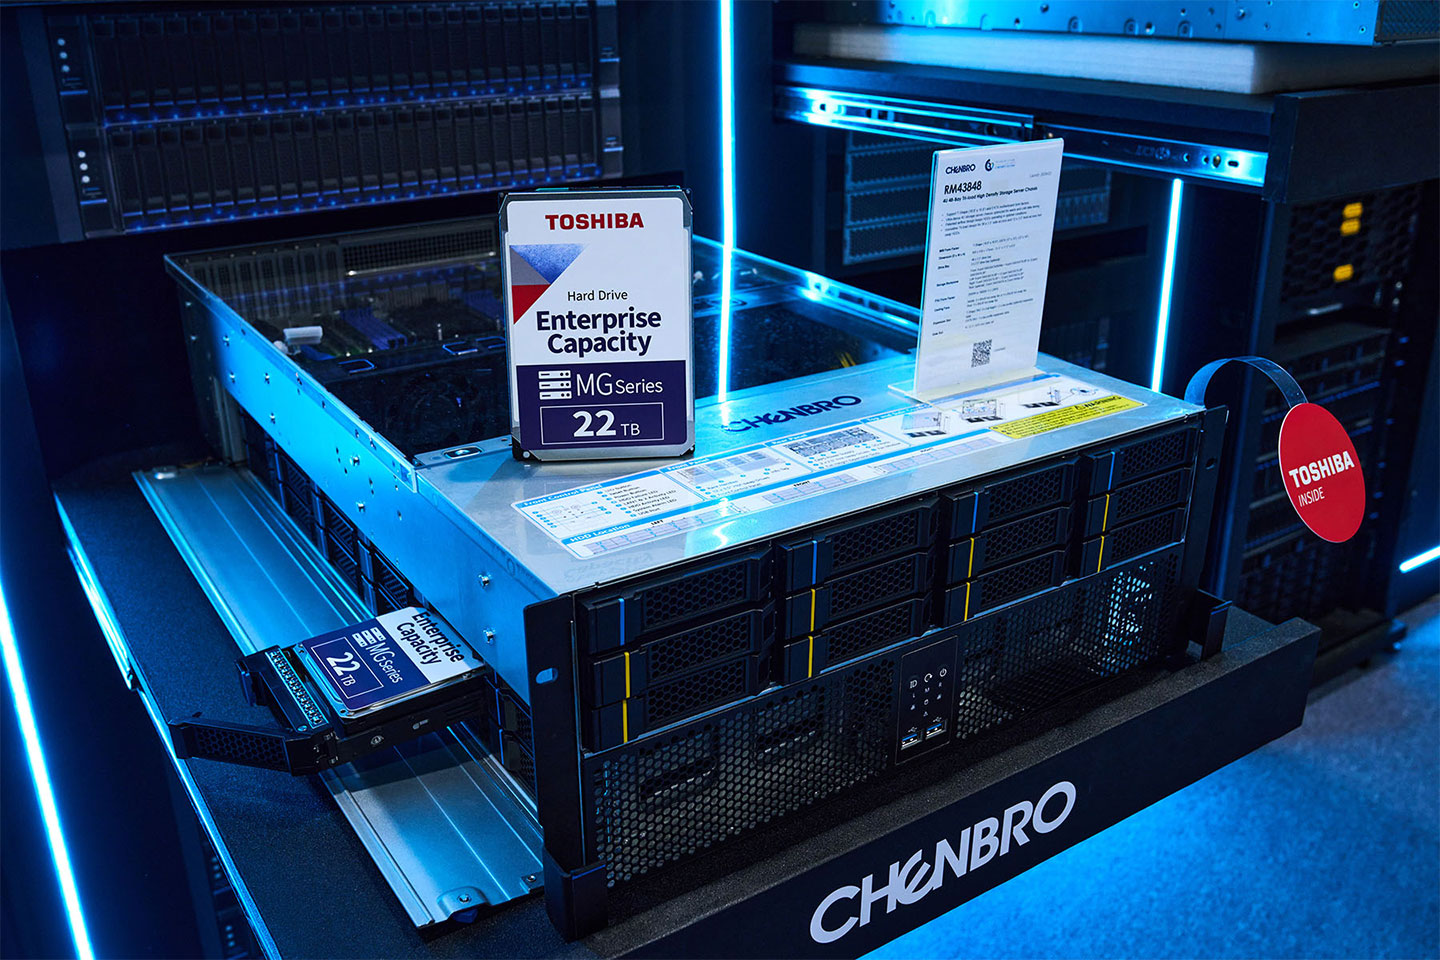 同樣獲得美國 MUSE 計大獎和 TITAN 創新計大獎肯定的 4U Tri-load 伺服器機箱 RM43848 具備 48 顆 HDD 儲擴充能力，配 Toshiba MG10F 22TB 企級硬碟，更能滿足企總儲容量的需求。